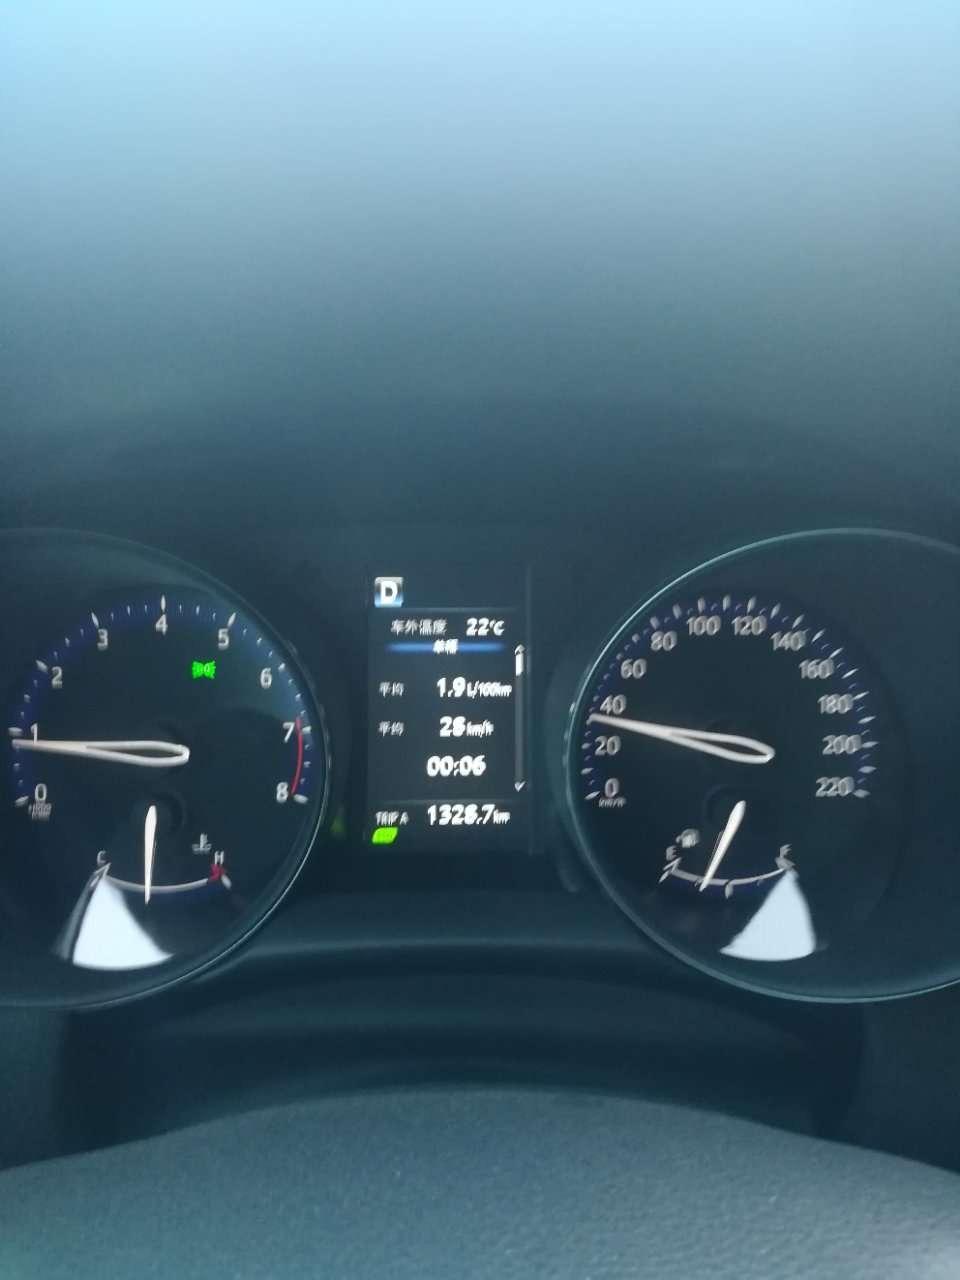 丰田c hr 今天发下前年开了一千多公里时的一次单程油耗吧！来来来，继续挑战全网最低单程油耗